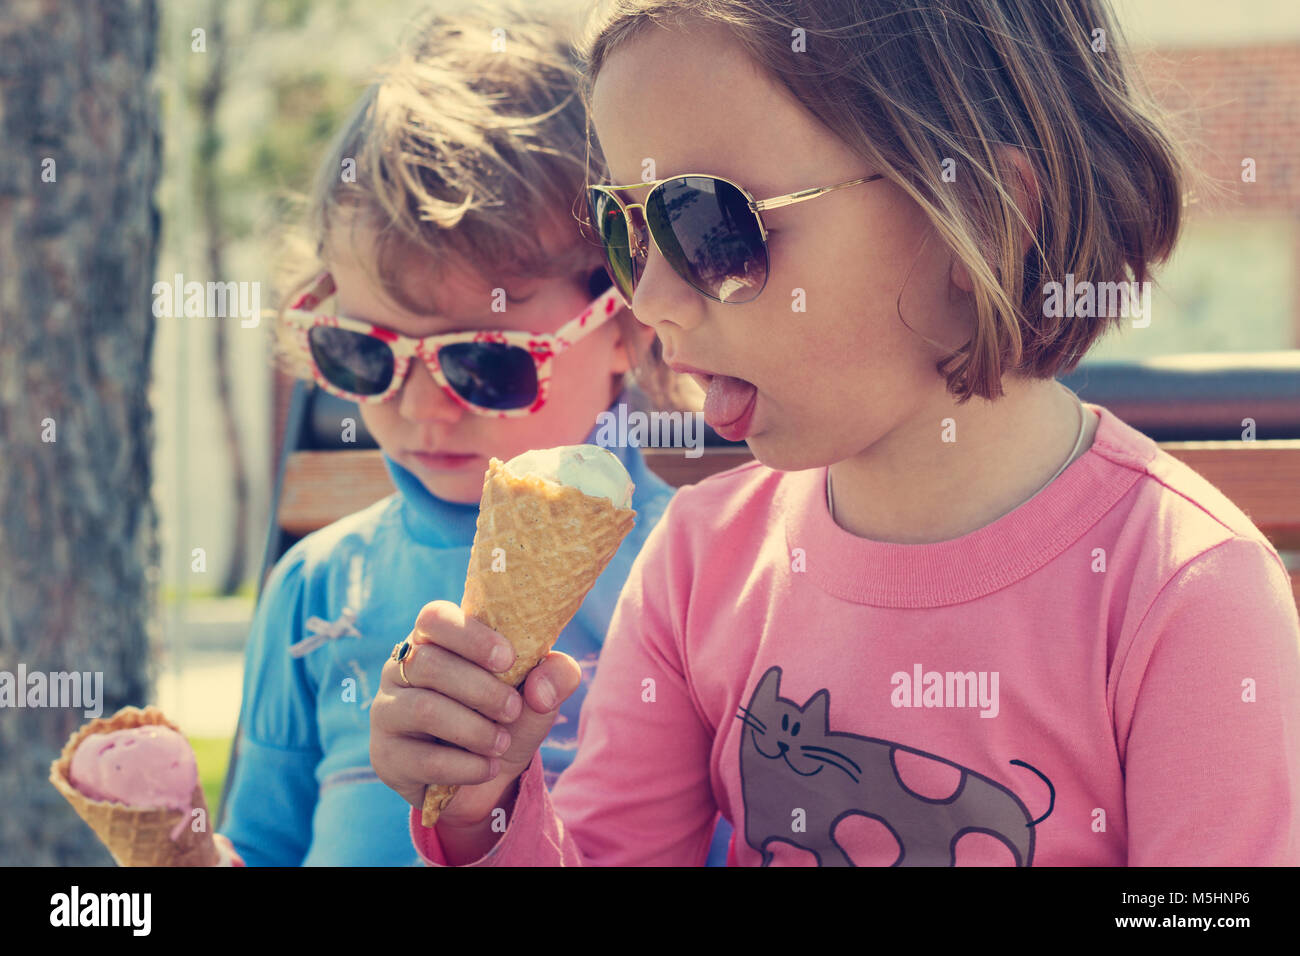 Zwei Kleine Mädchen Schwestern Eis Essen Stockfotografie Alamy 9961